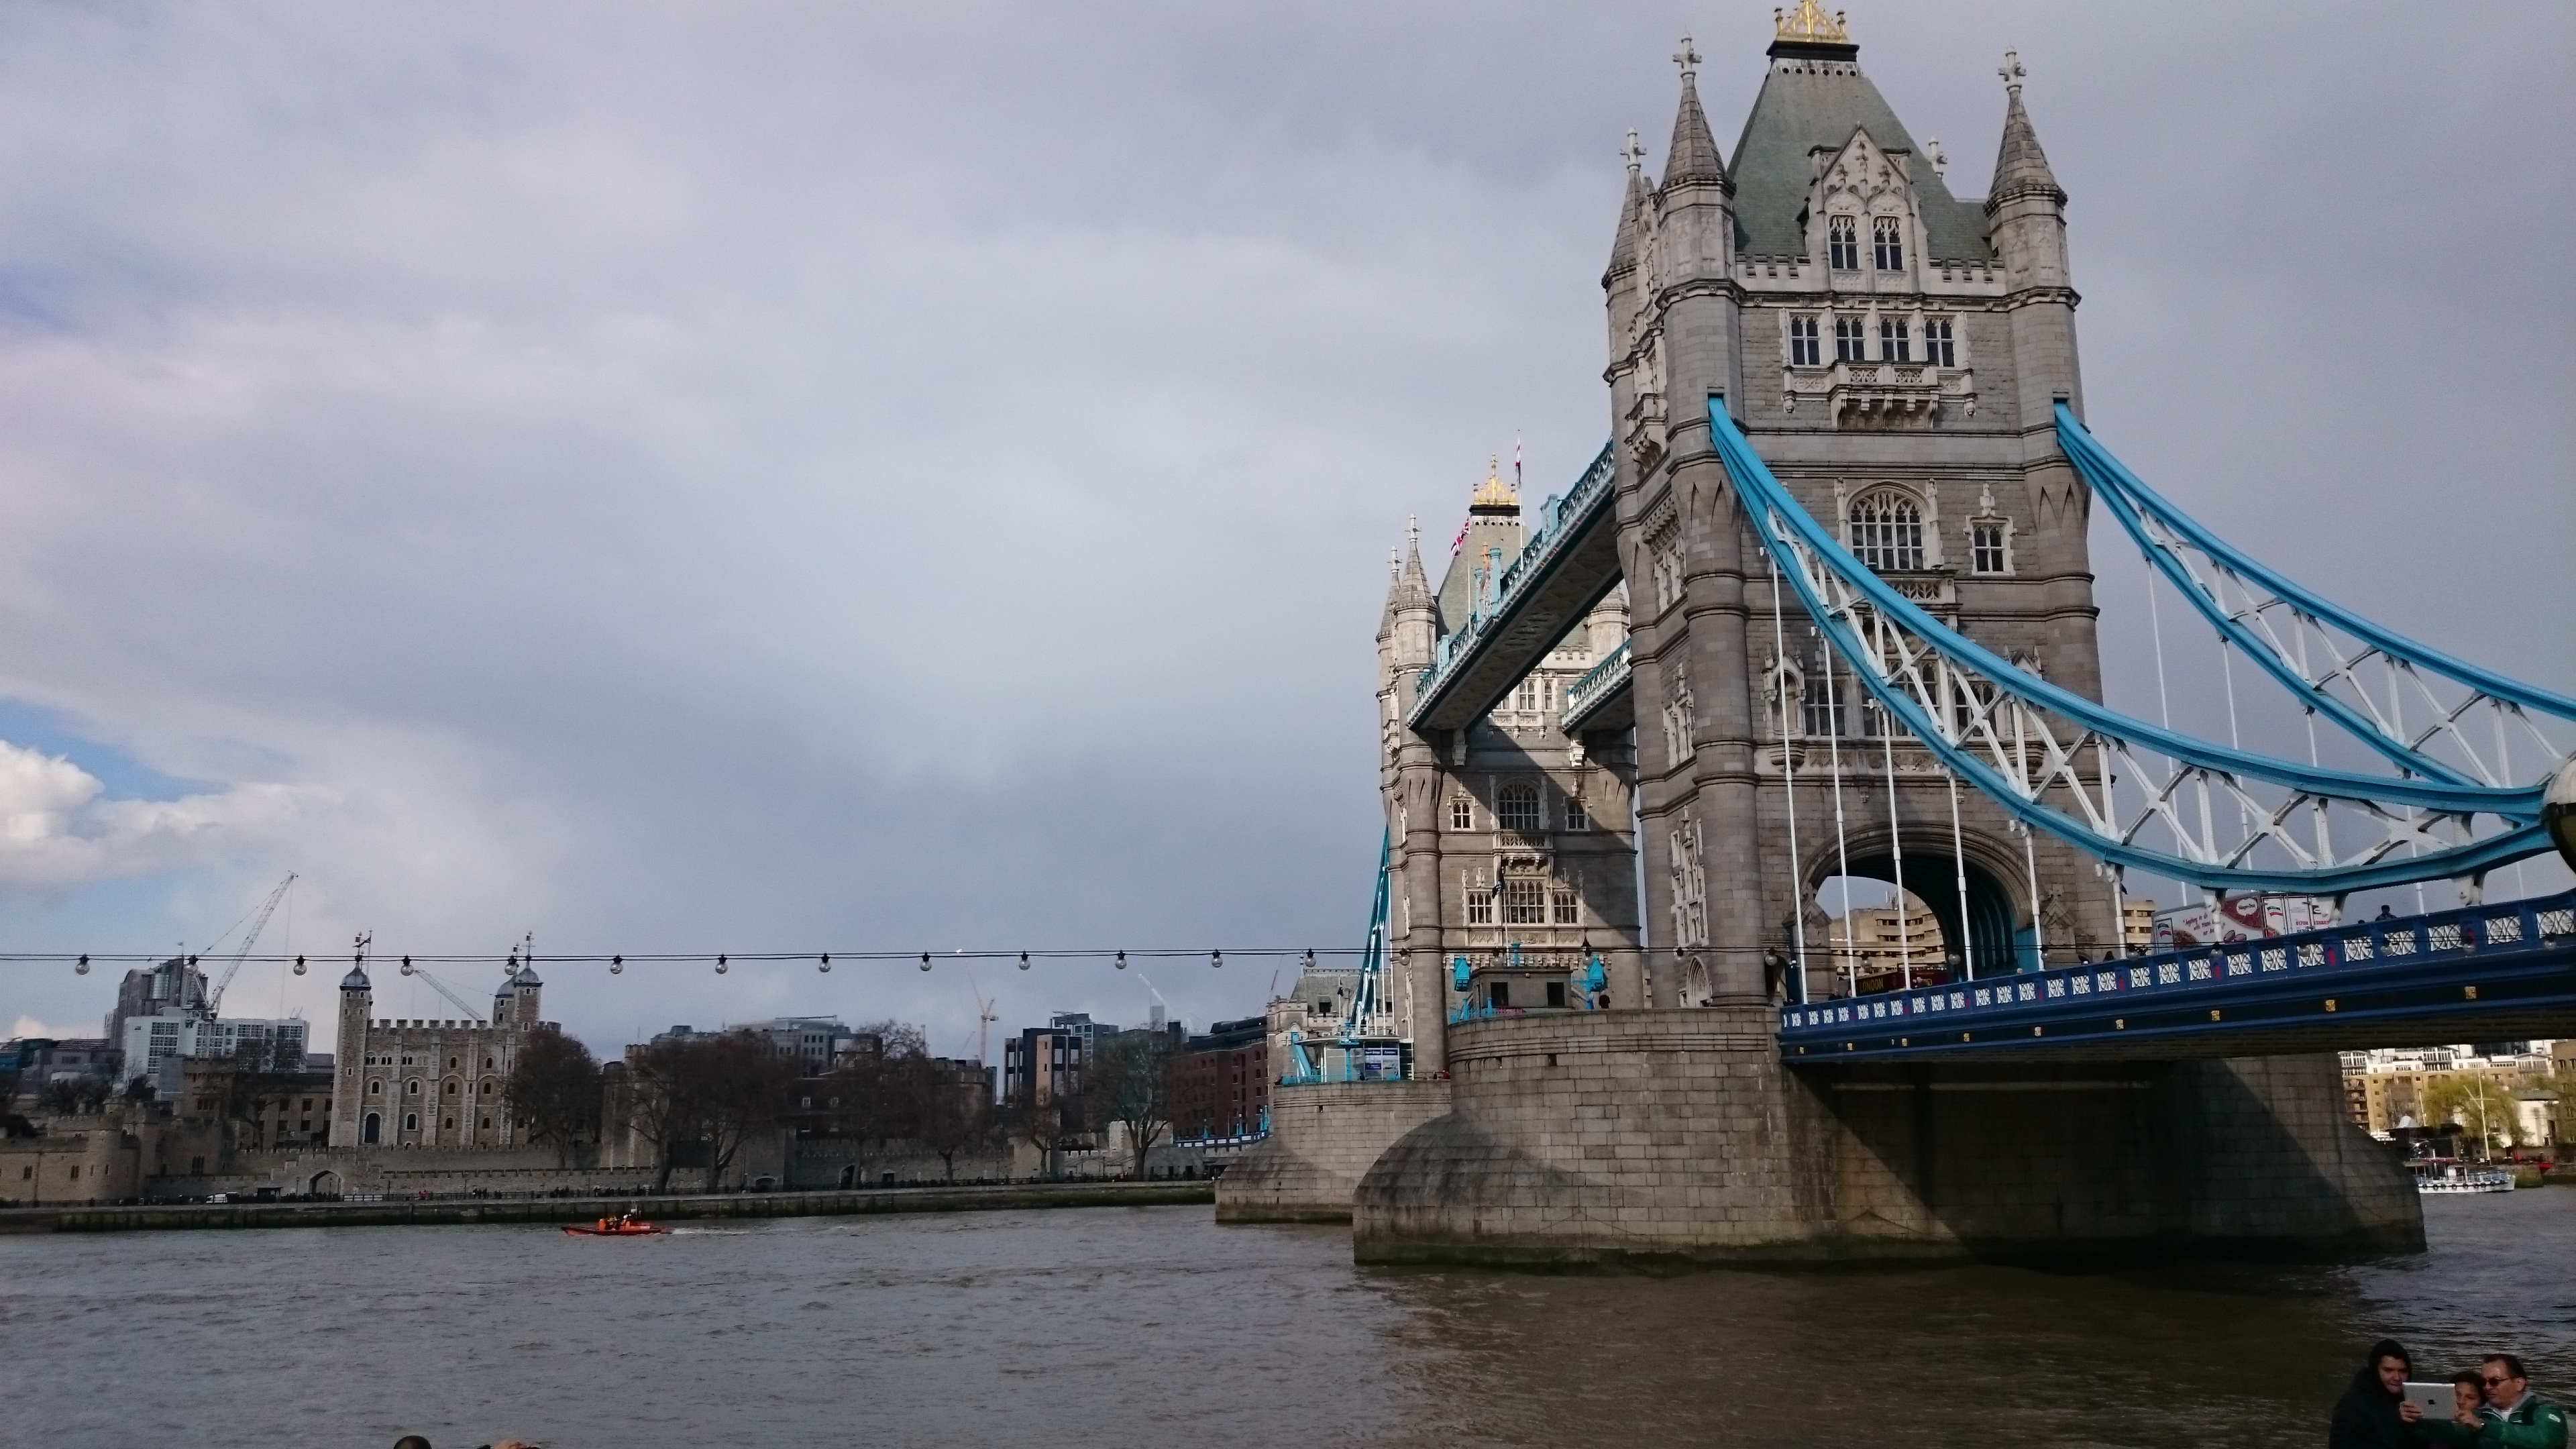 dsc 0735 - Una visita al Tower Bridge en Londres